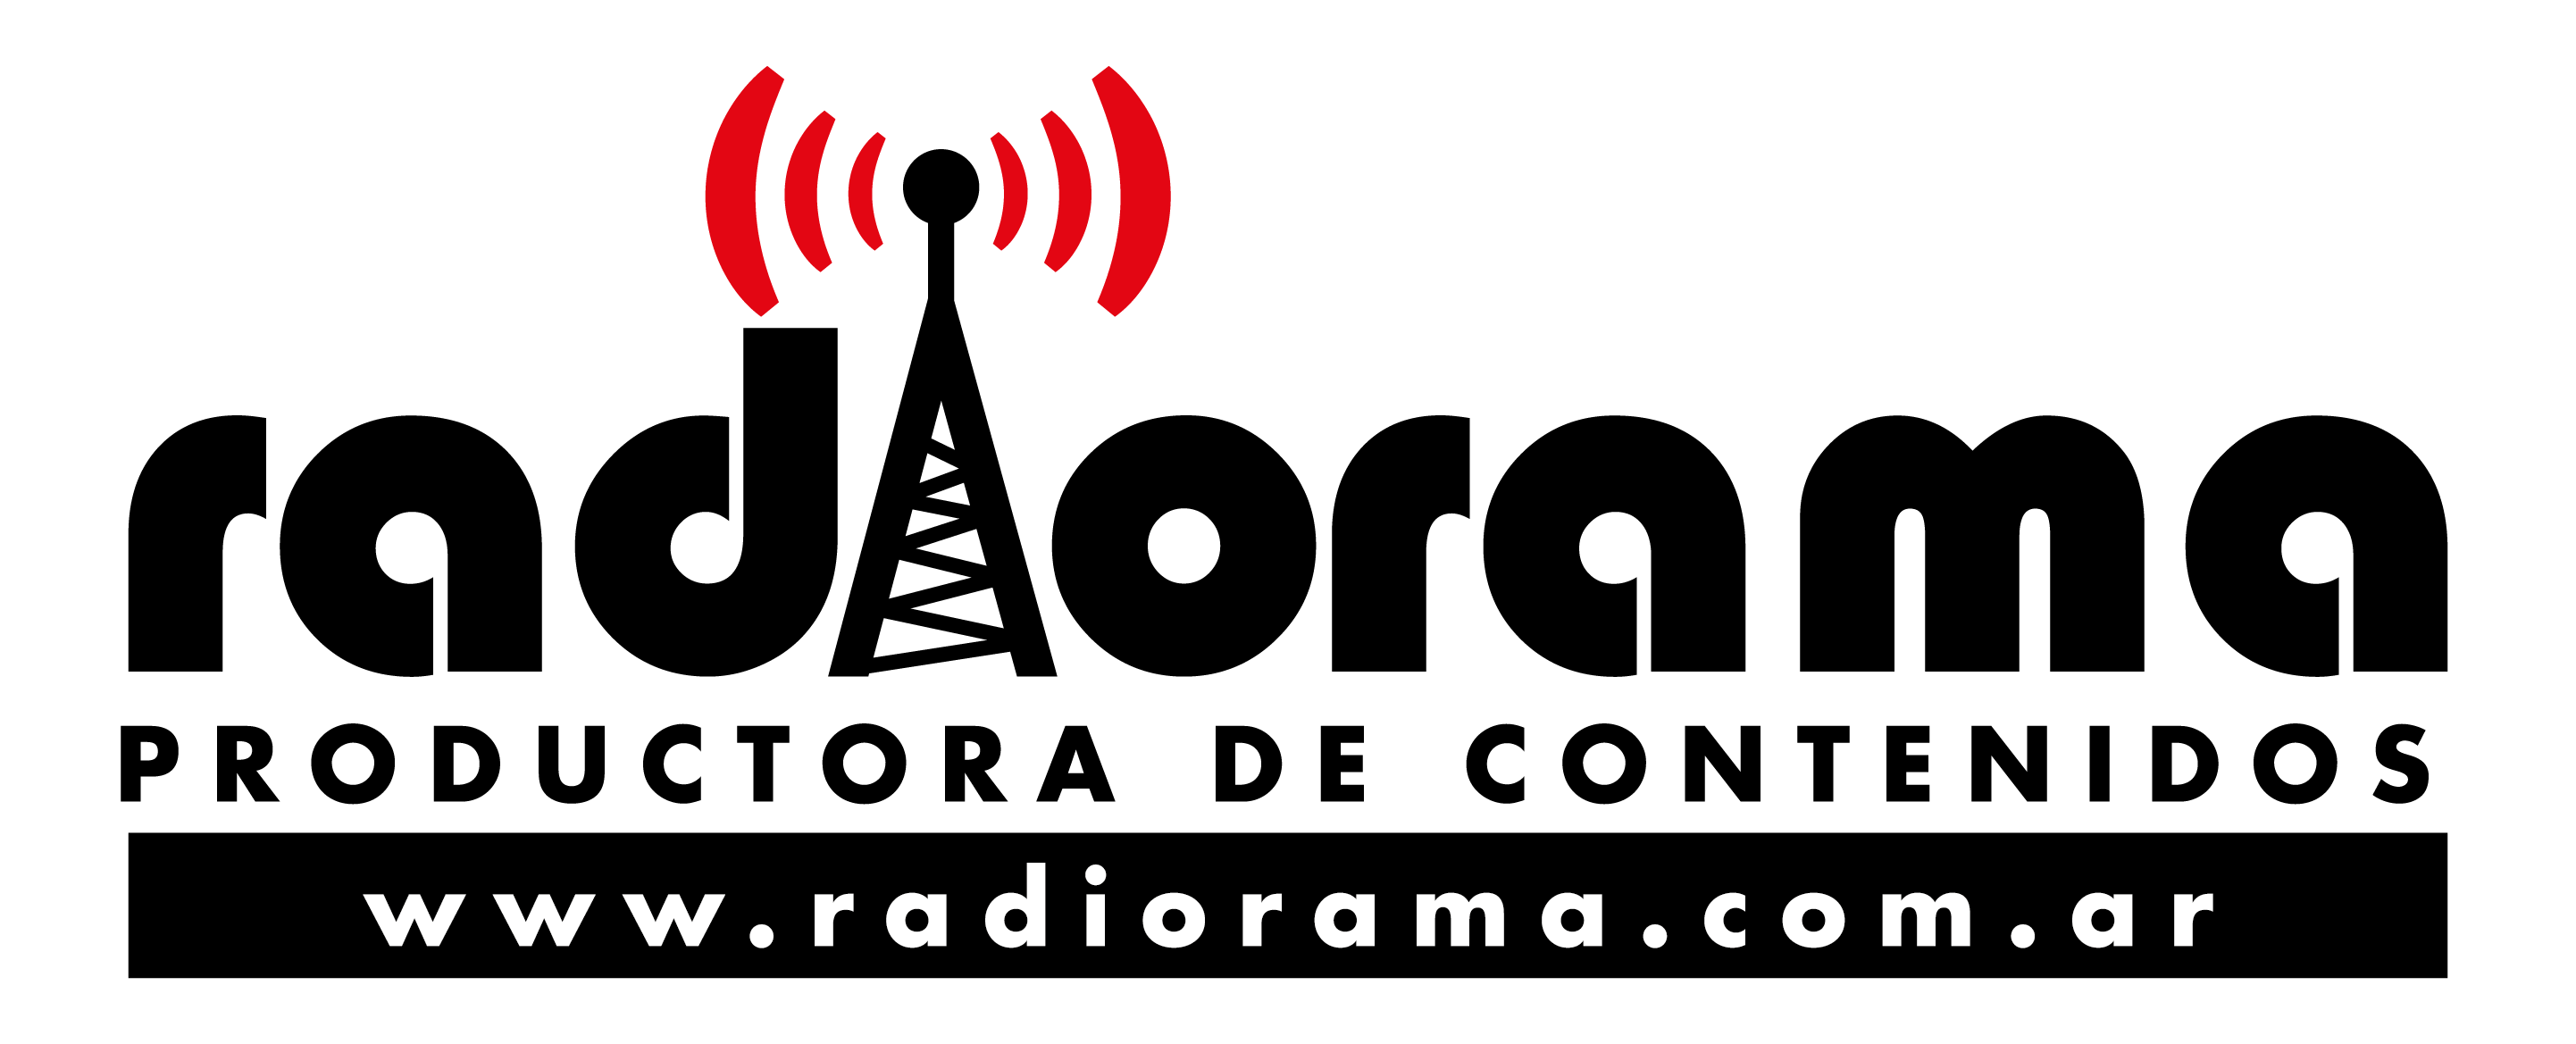 radiorama.com.ar